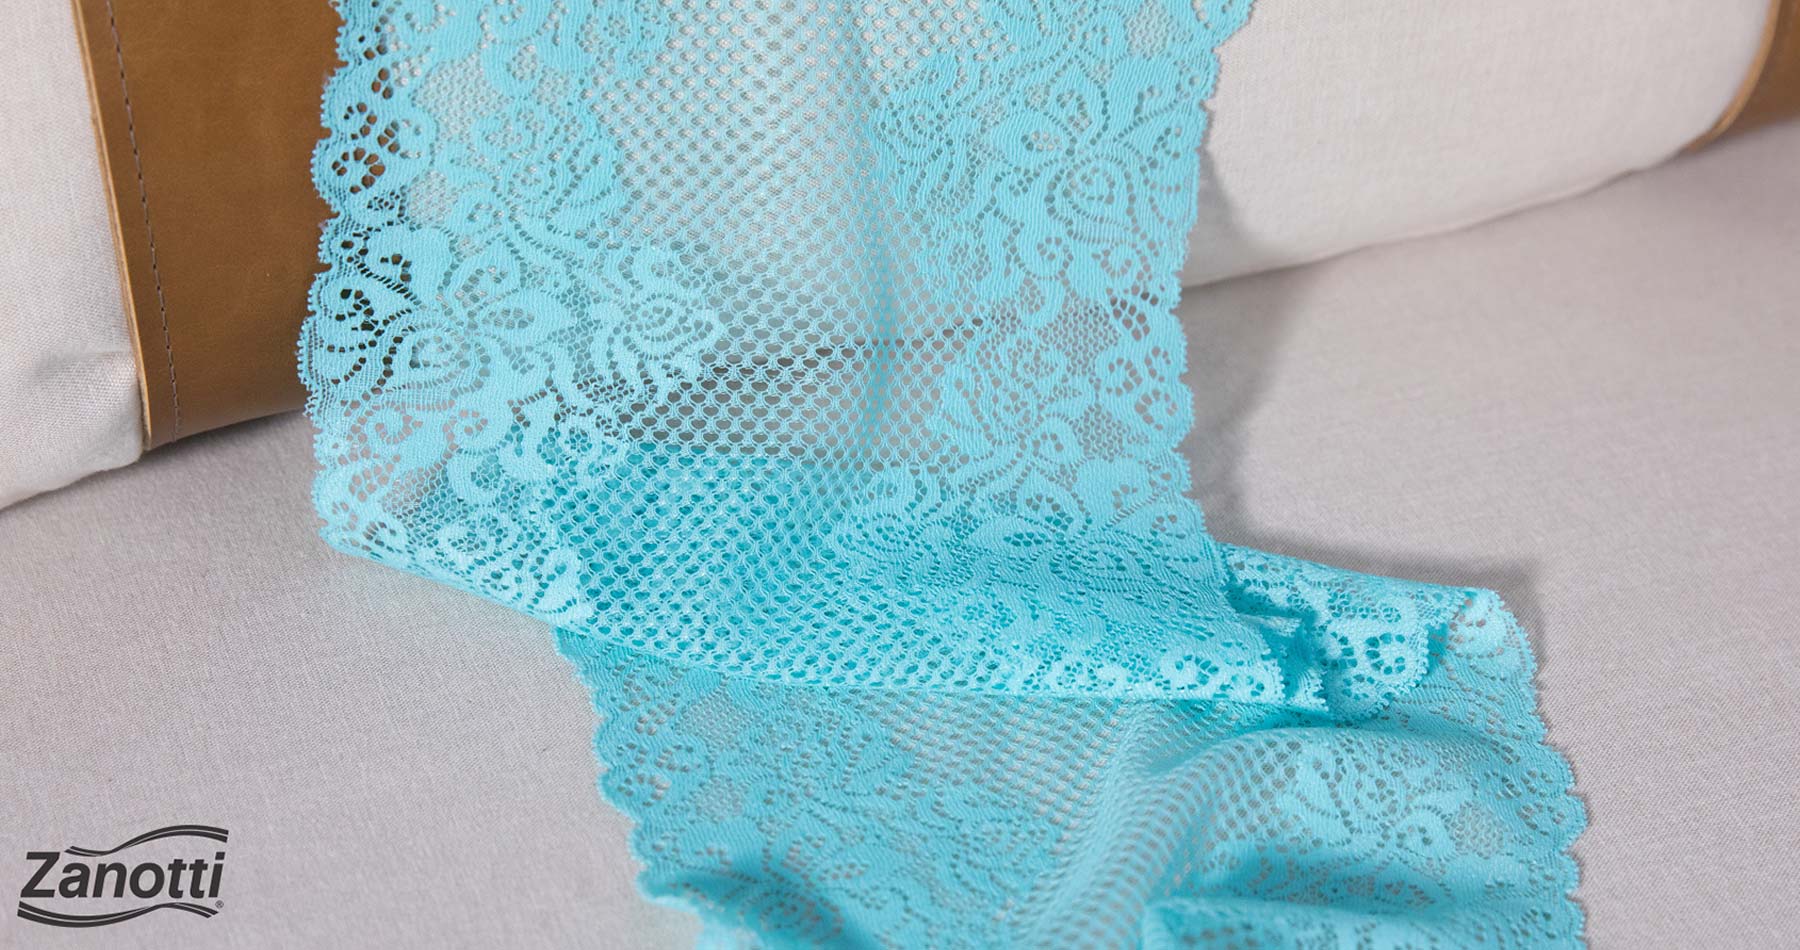 renda da Zanotti em tom azul, perfeita para a confecção de lingerie sofisticada